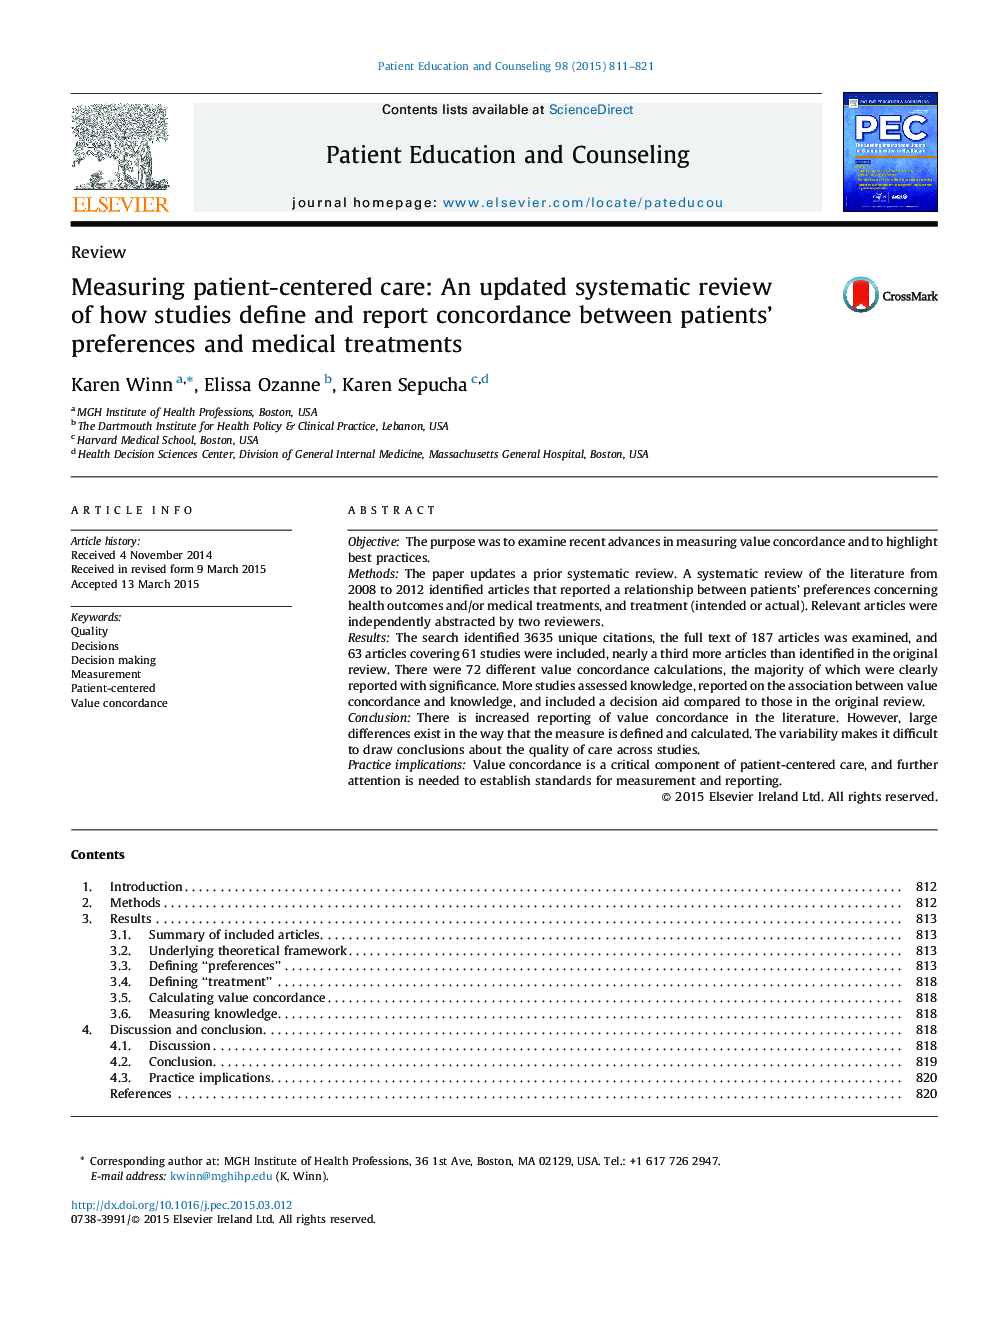 ارزیابی مراقبت از بیمار مبتلا به بیماری: بررسی منظم در مورد نحوه تعیین مطالعات و گزارش سازگاری بین ترجیحات بیماران و درمان های پزشکی 